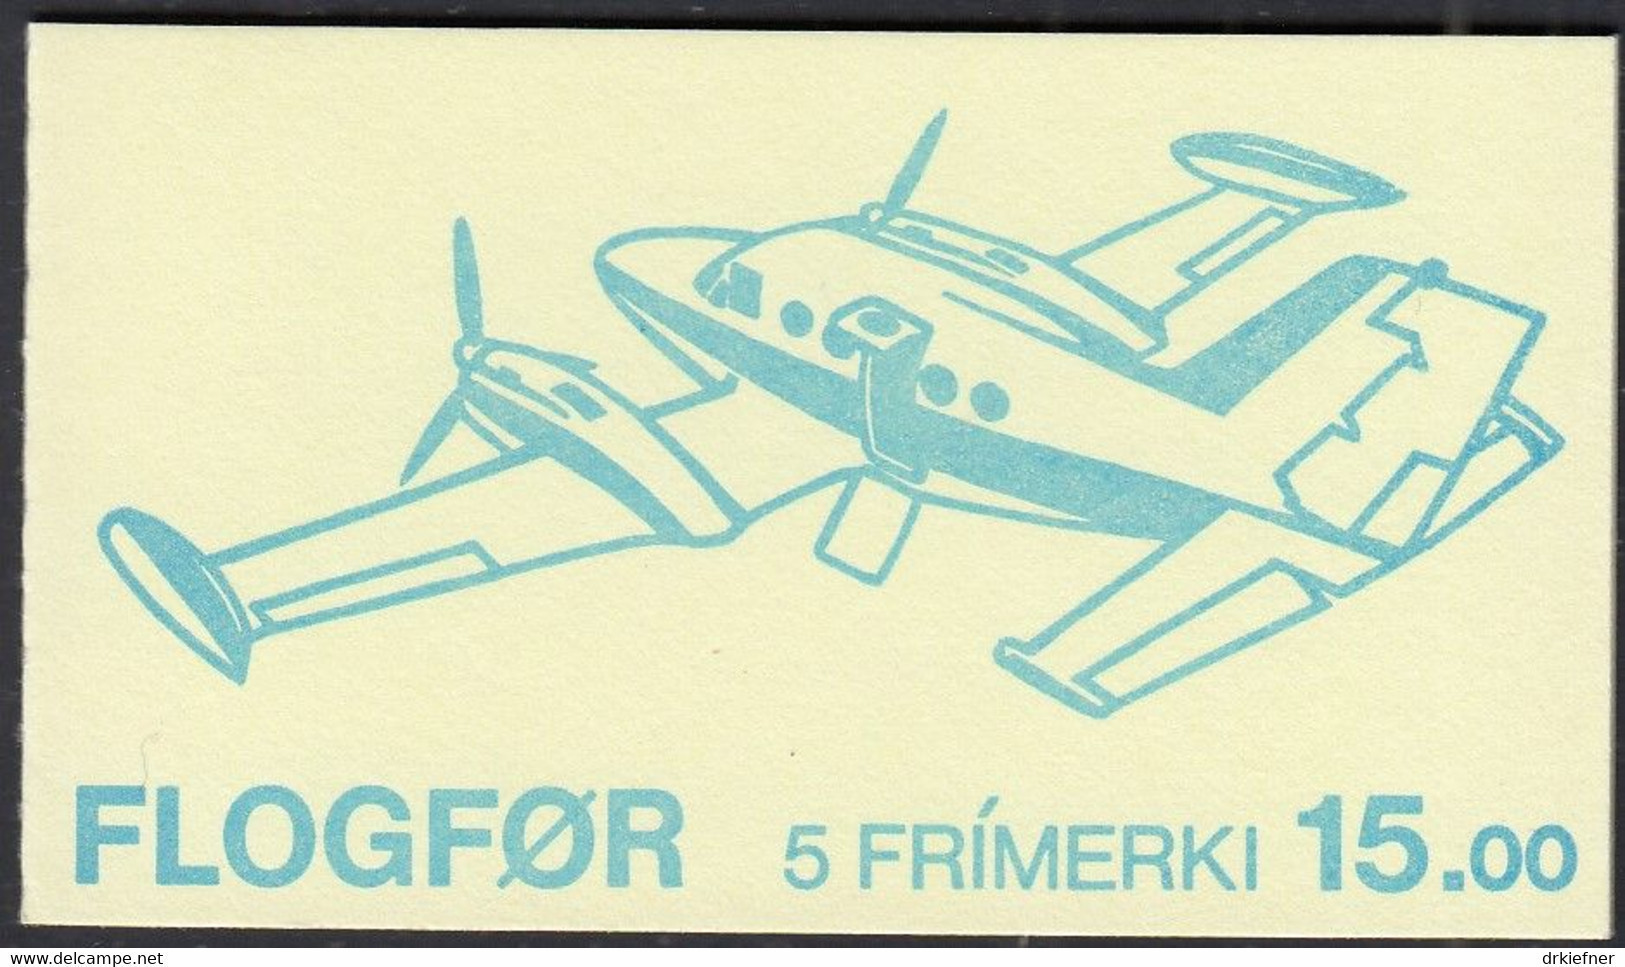 FÄRÖER Markenheftchen MH 3 Mit 125-129, Postfrisch **, Flugzeuge, 1985 - Faroe Islands